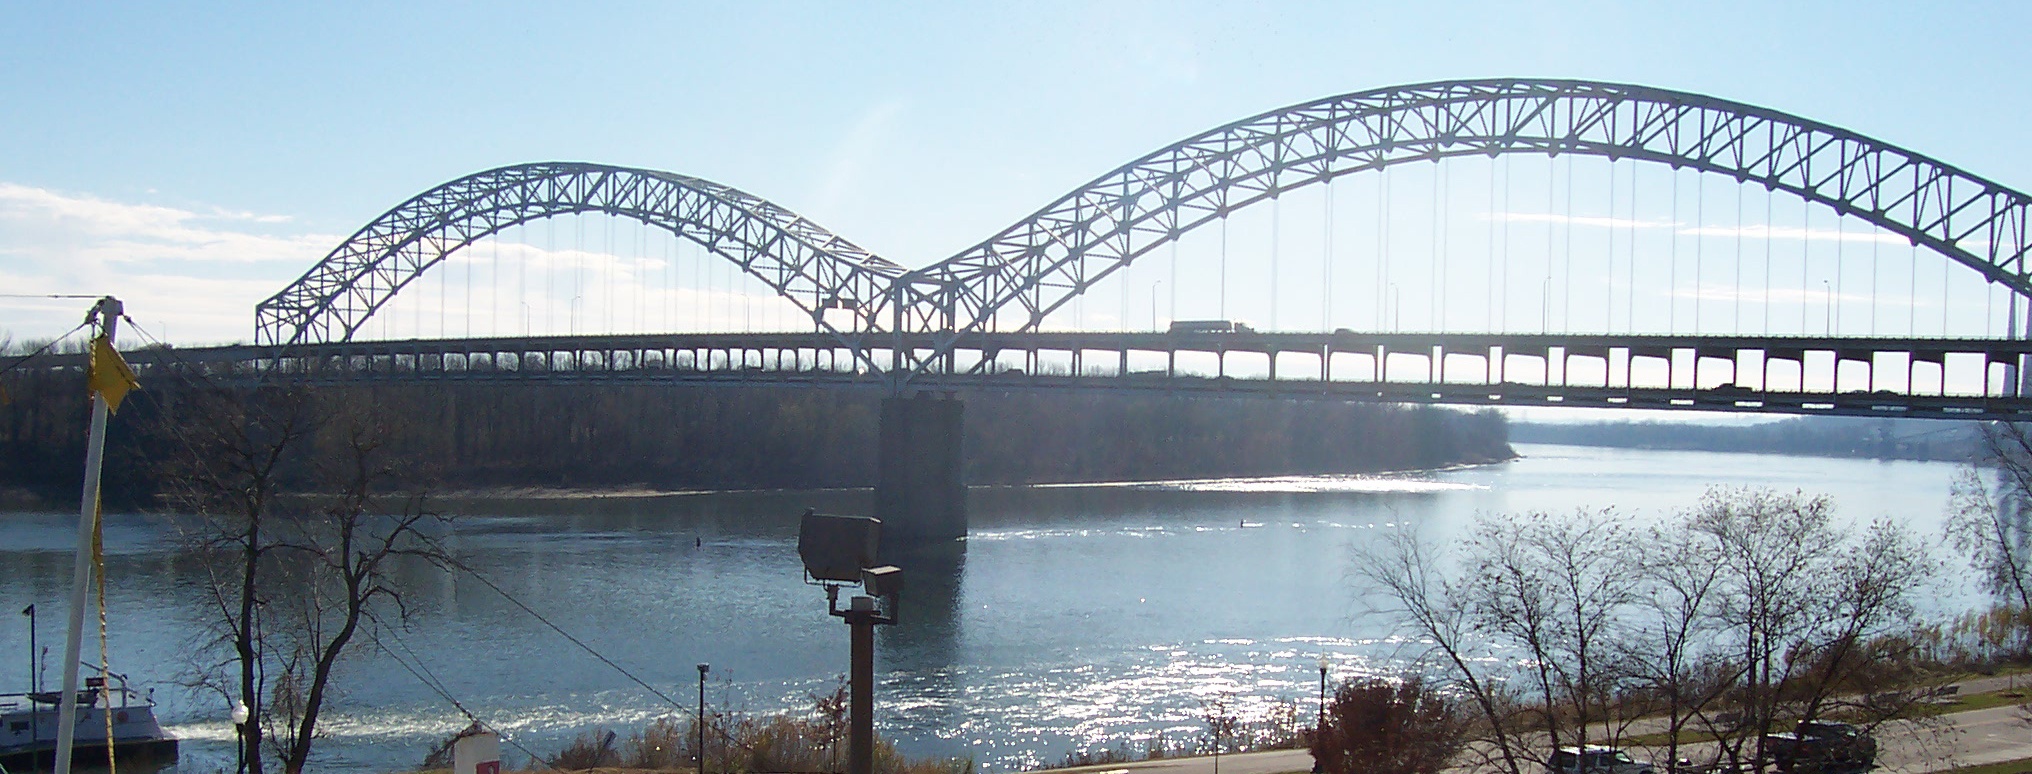 Питание реки огайо. Мост Кентукки. Нью-Олбани штат Индиана. Река Олбани. Мост через реку Огайо Портсмут.